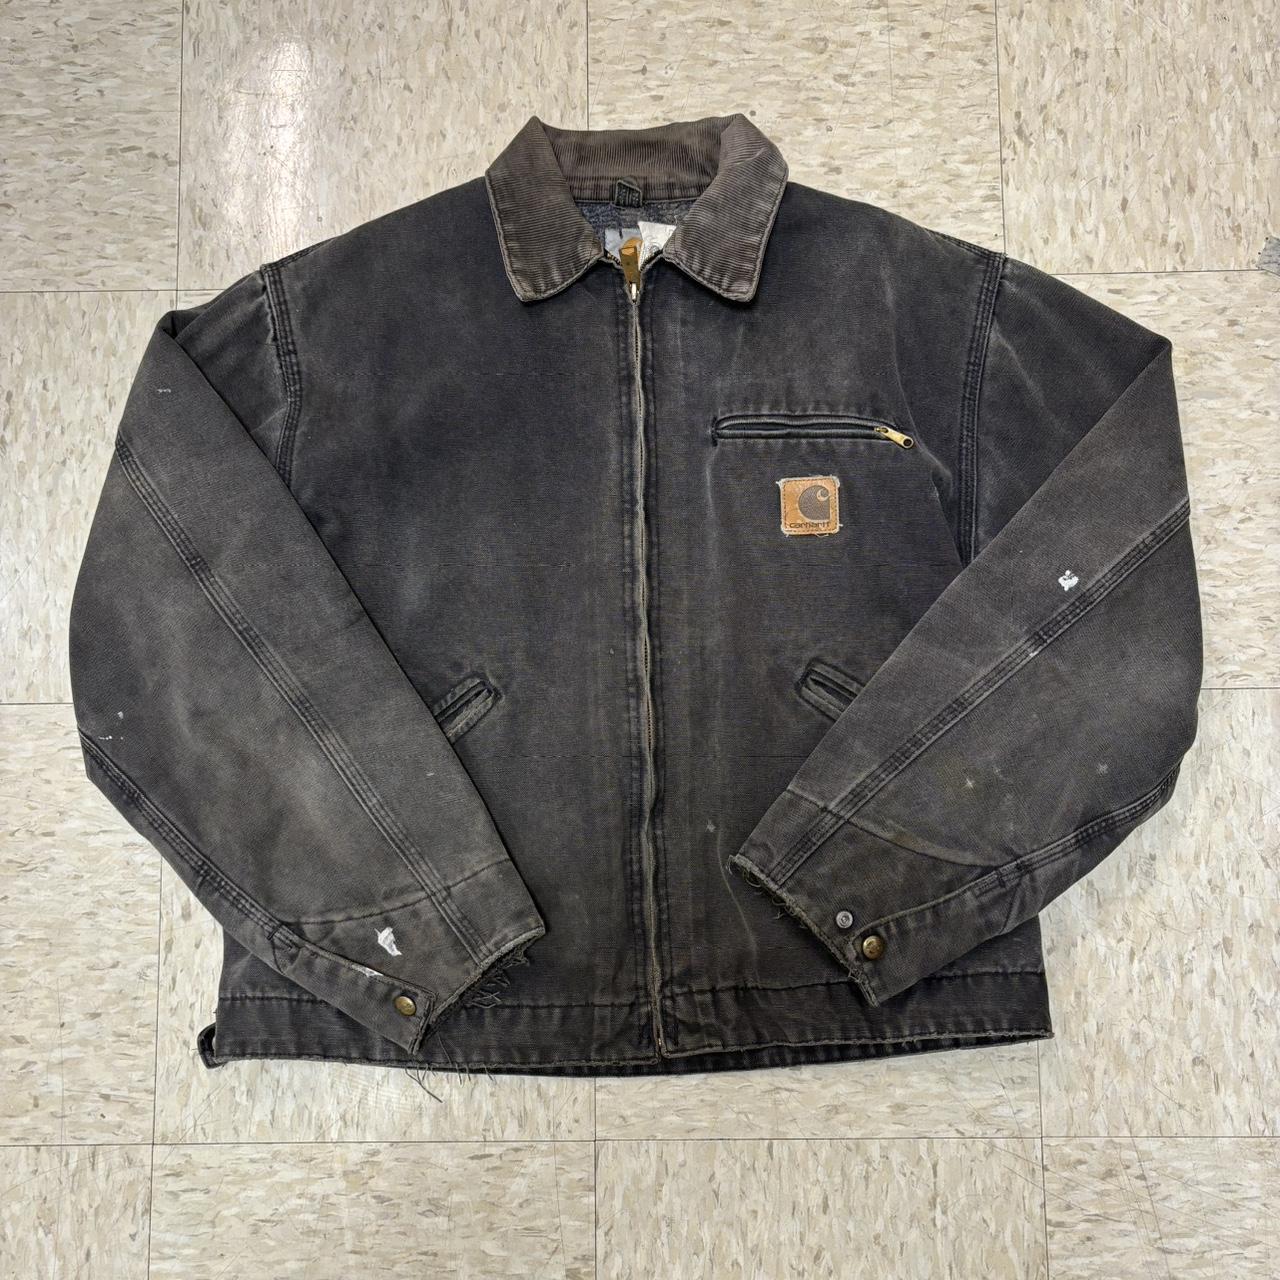 Flannel lined Vintage Carhartt Detroit jacket Some... - Depop